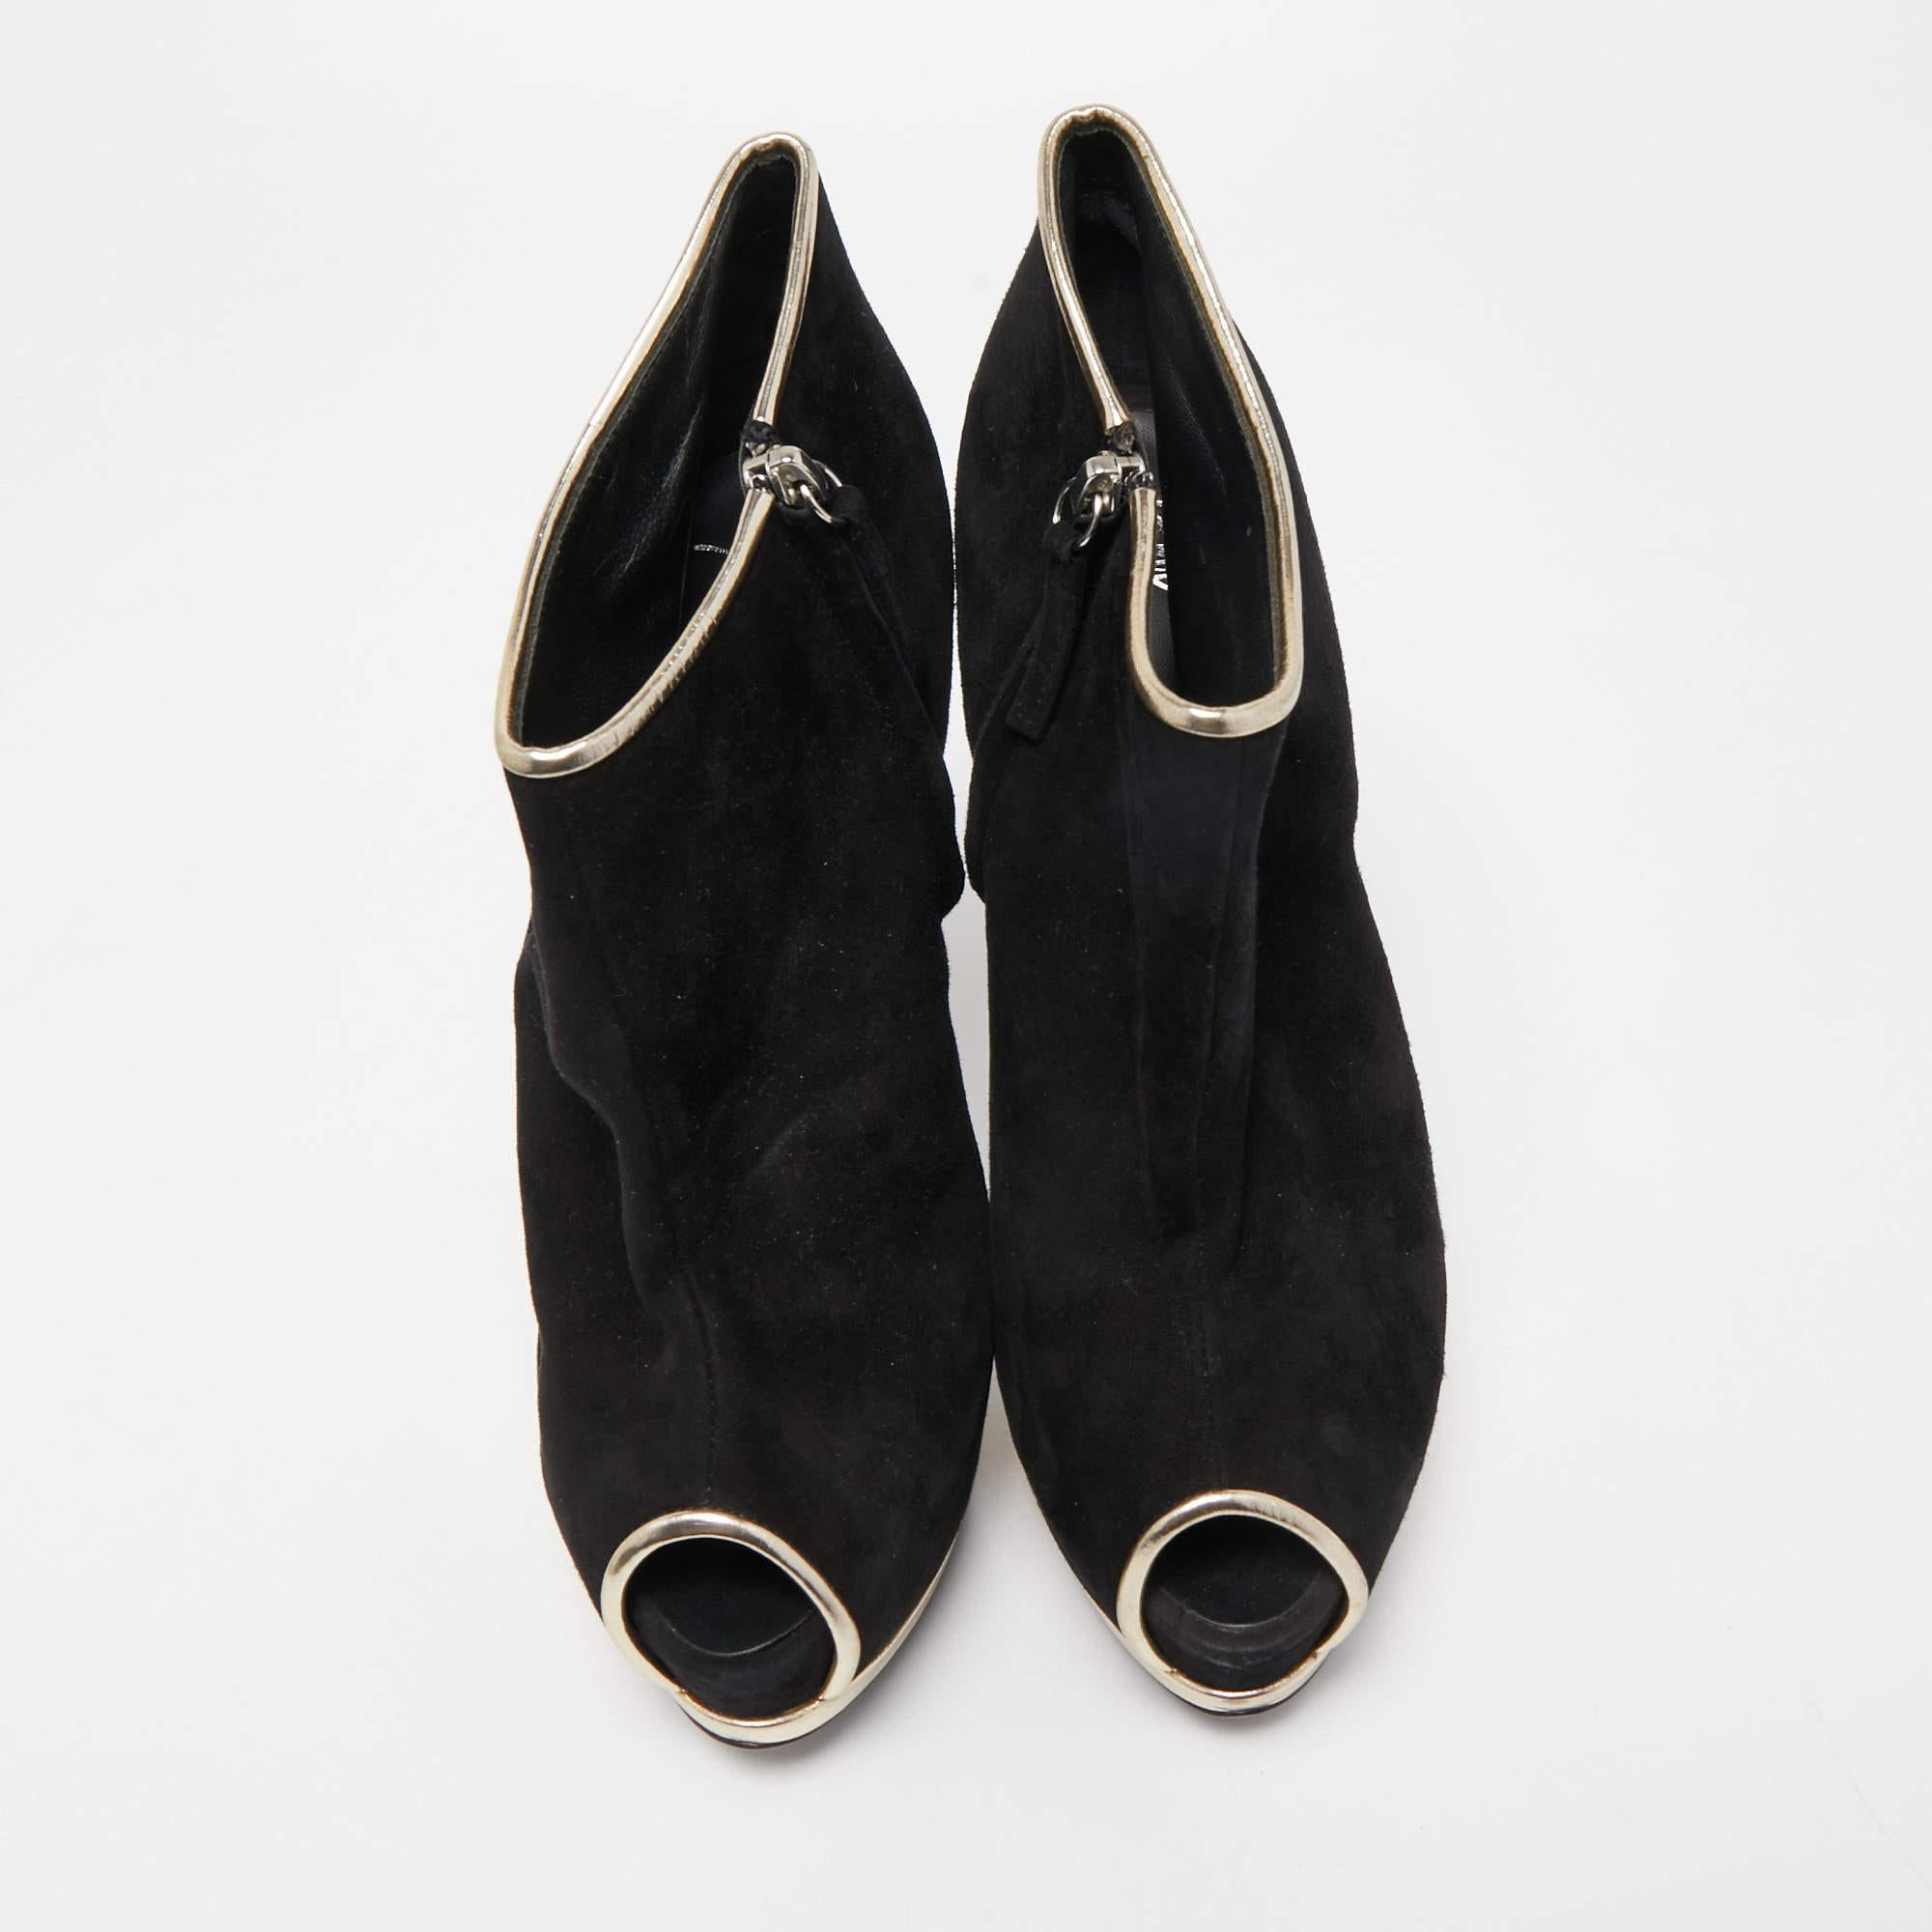 Les bottines Giuseppe Zanotti respirent l'élégance intemporelle. Réalisées avec une attention méticuleuse aux détails, ces bottes présentent un mélange homogène de daim noir somptueux et de cuir luxueux. Le design épuré, complété par un talon